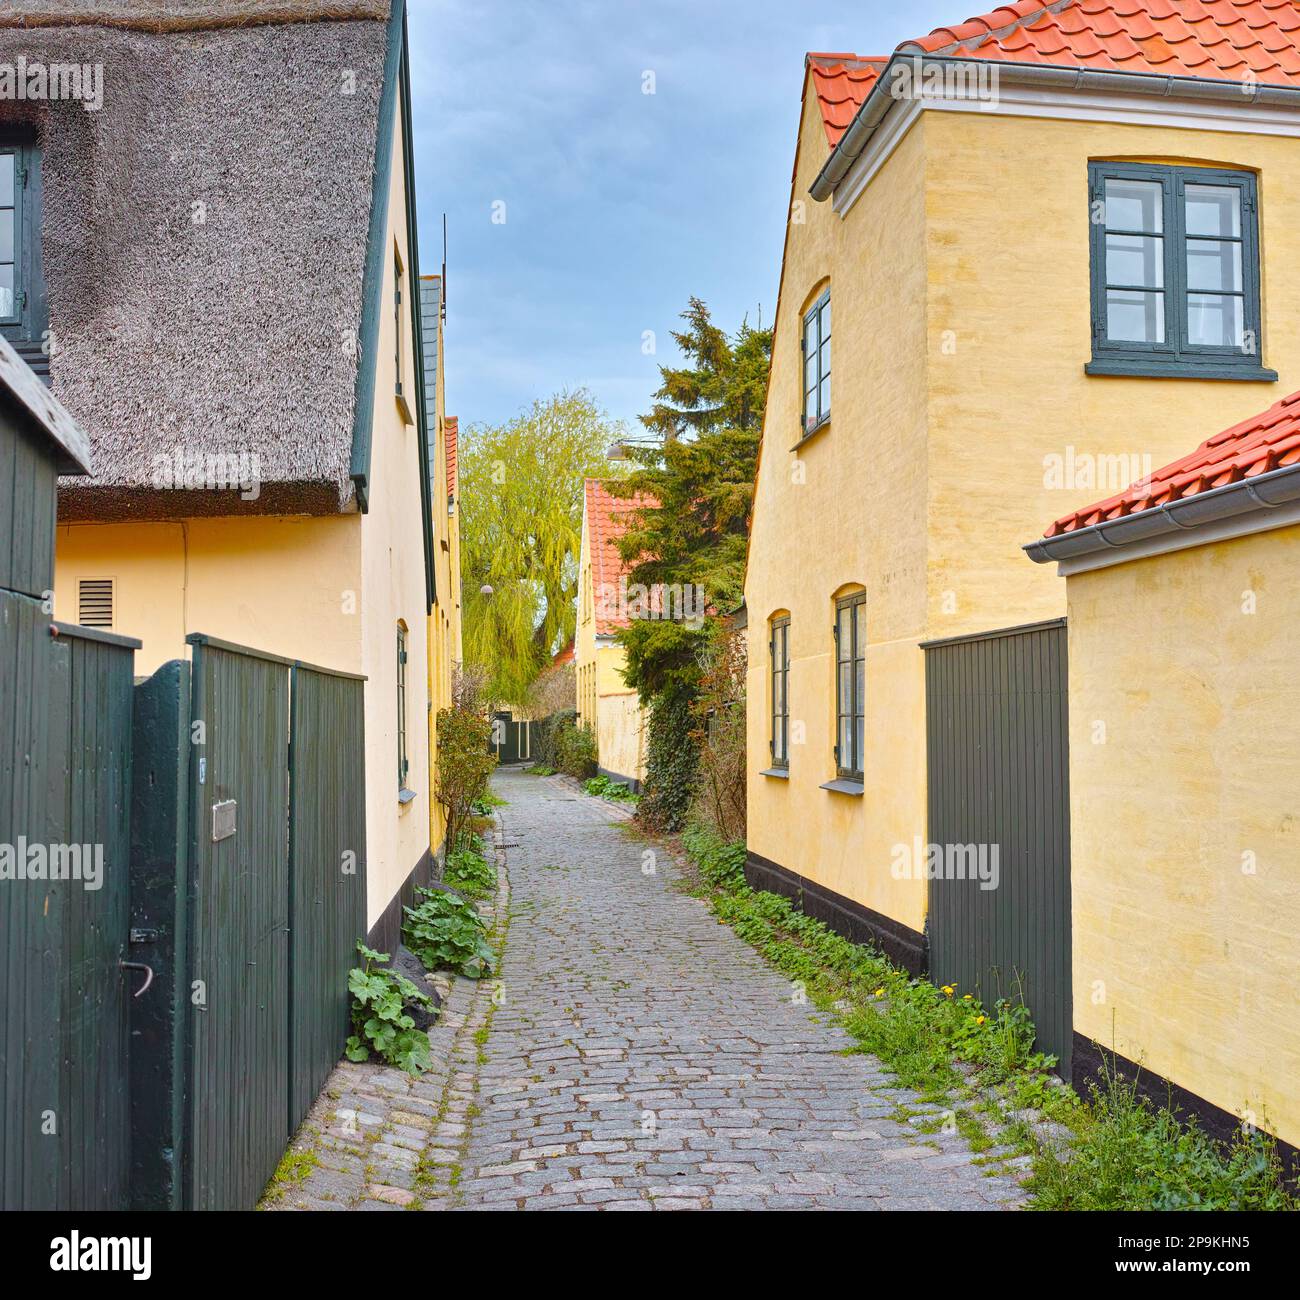 Historische Architektur von Dragor. Olld Häuser in der historischen Stadt Dragoer, Kopenhagen, Dänemark. Stockfoto